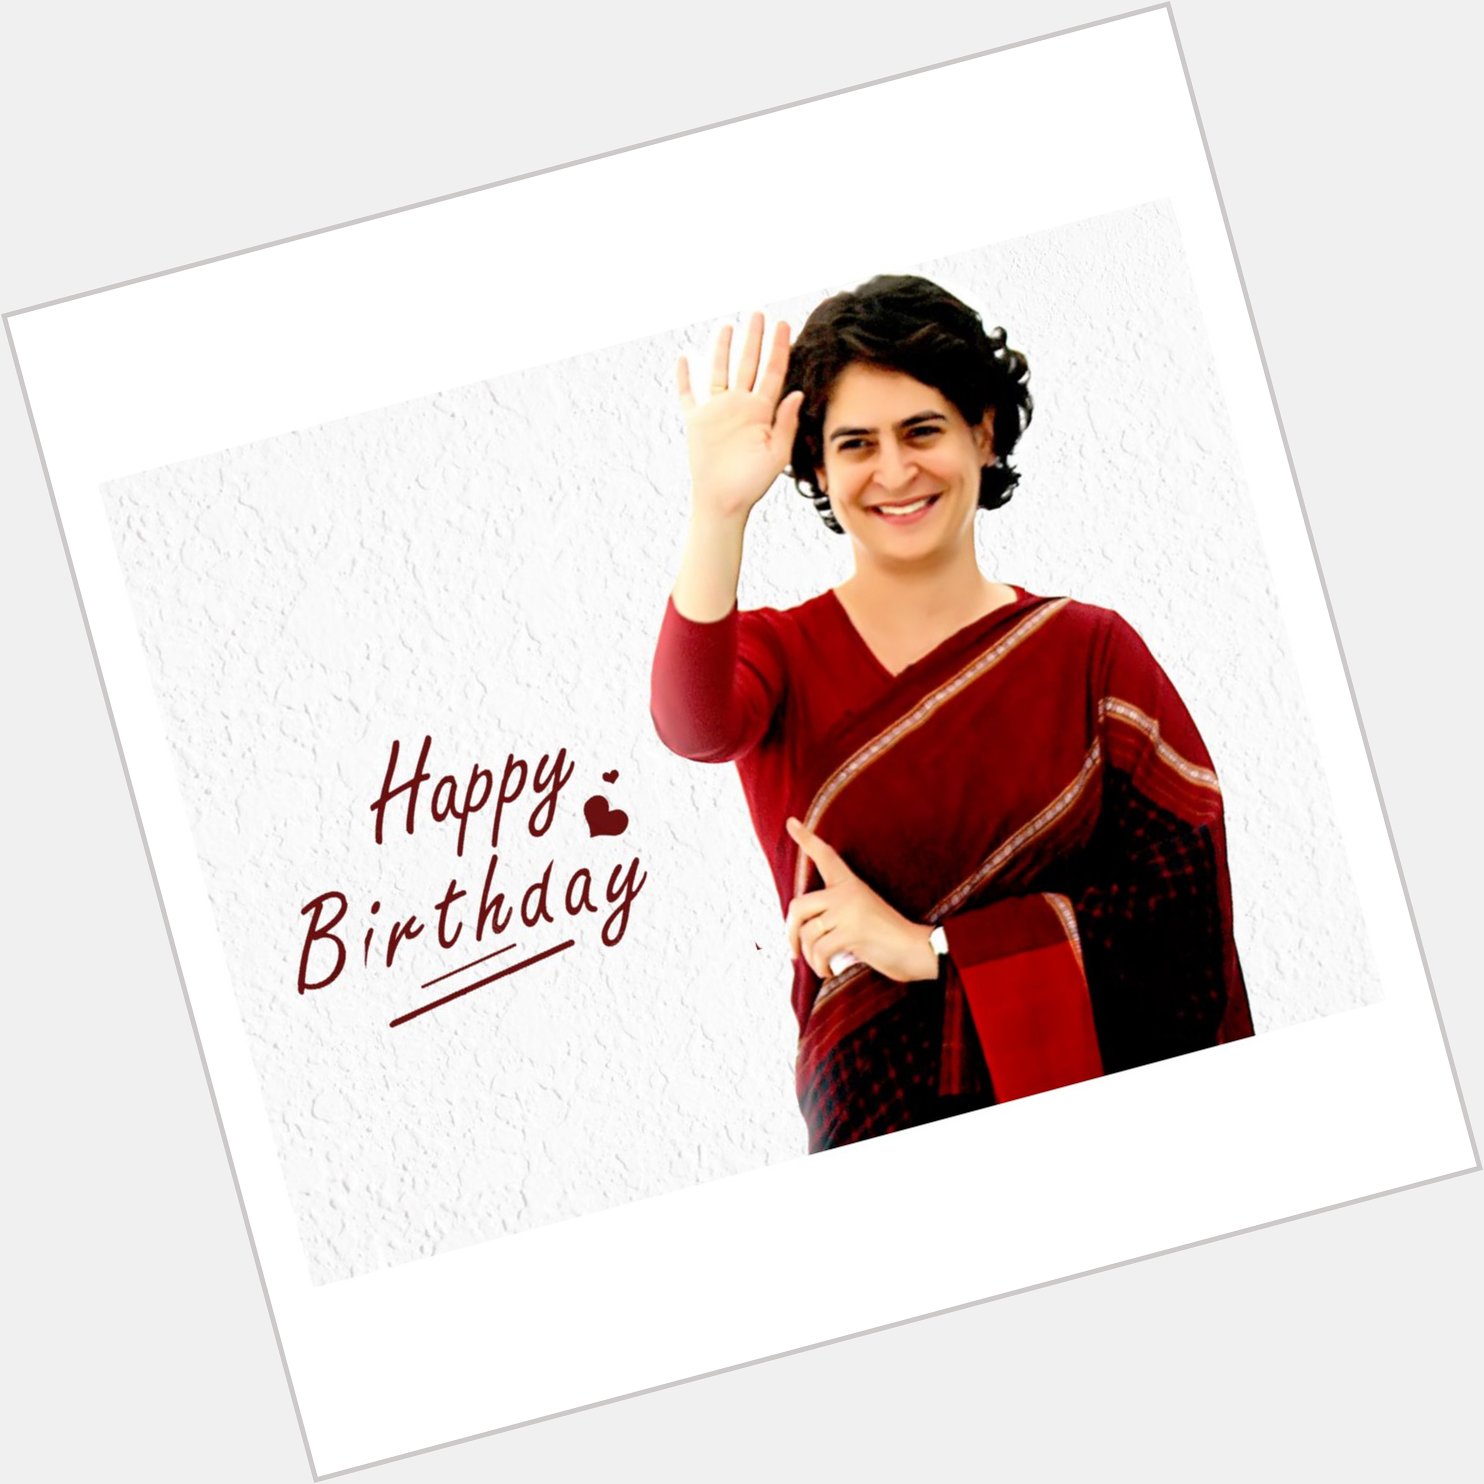 Wishing you a very happy birthday Smt Priyanka Gandhi Vadra ..      